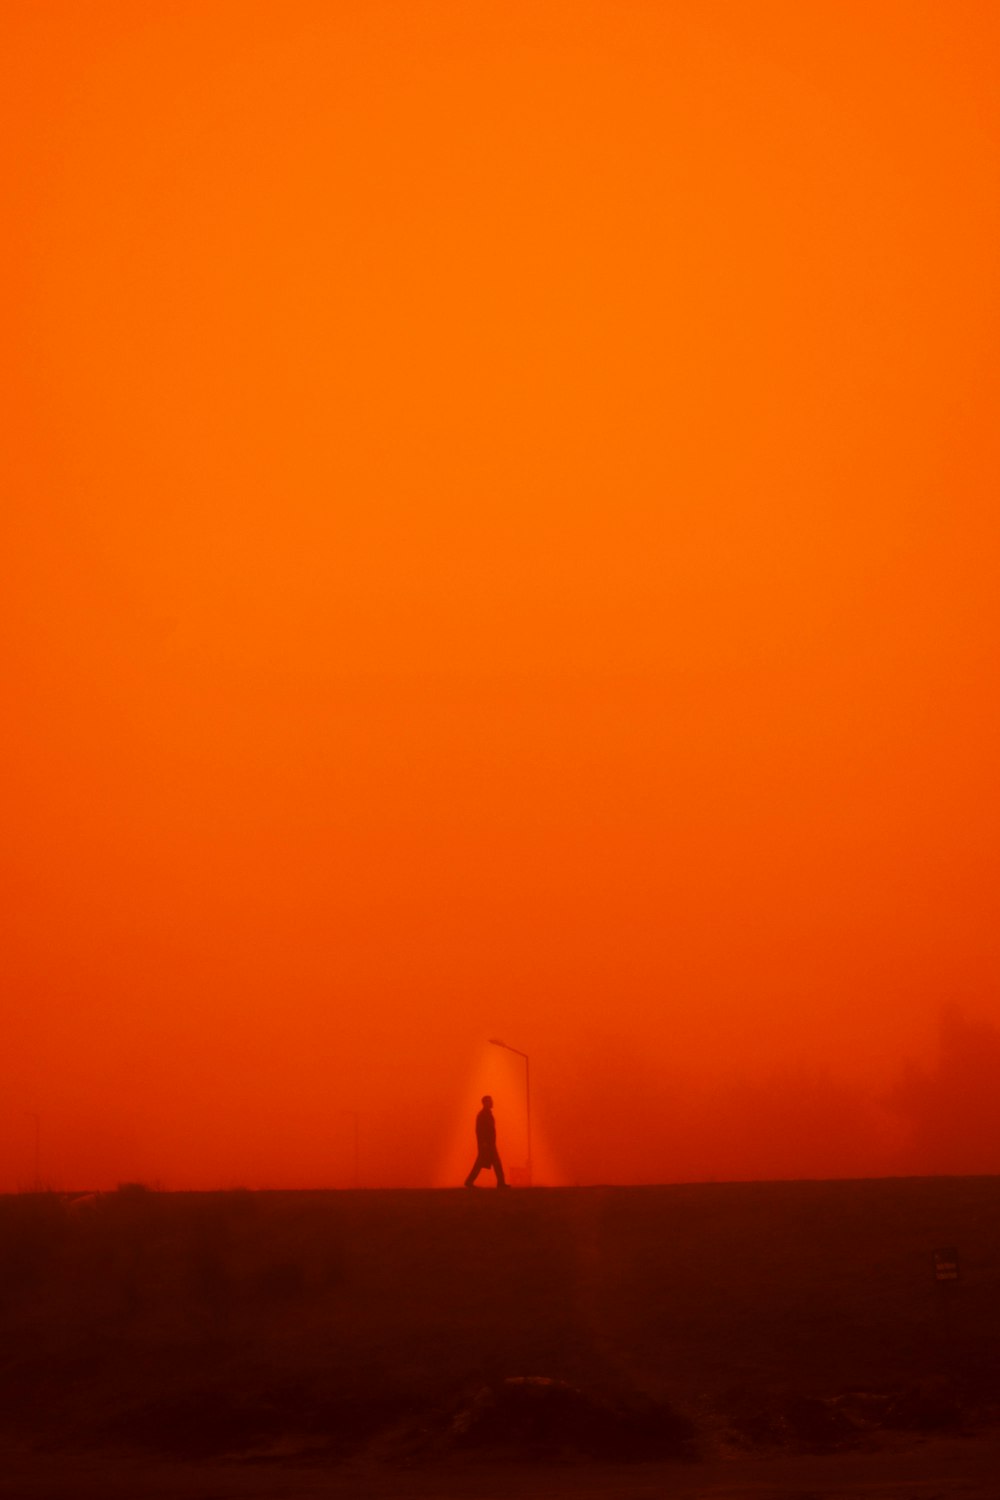 a person walking across a field under an orange sky